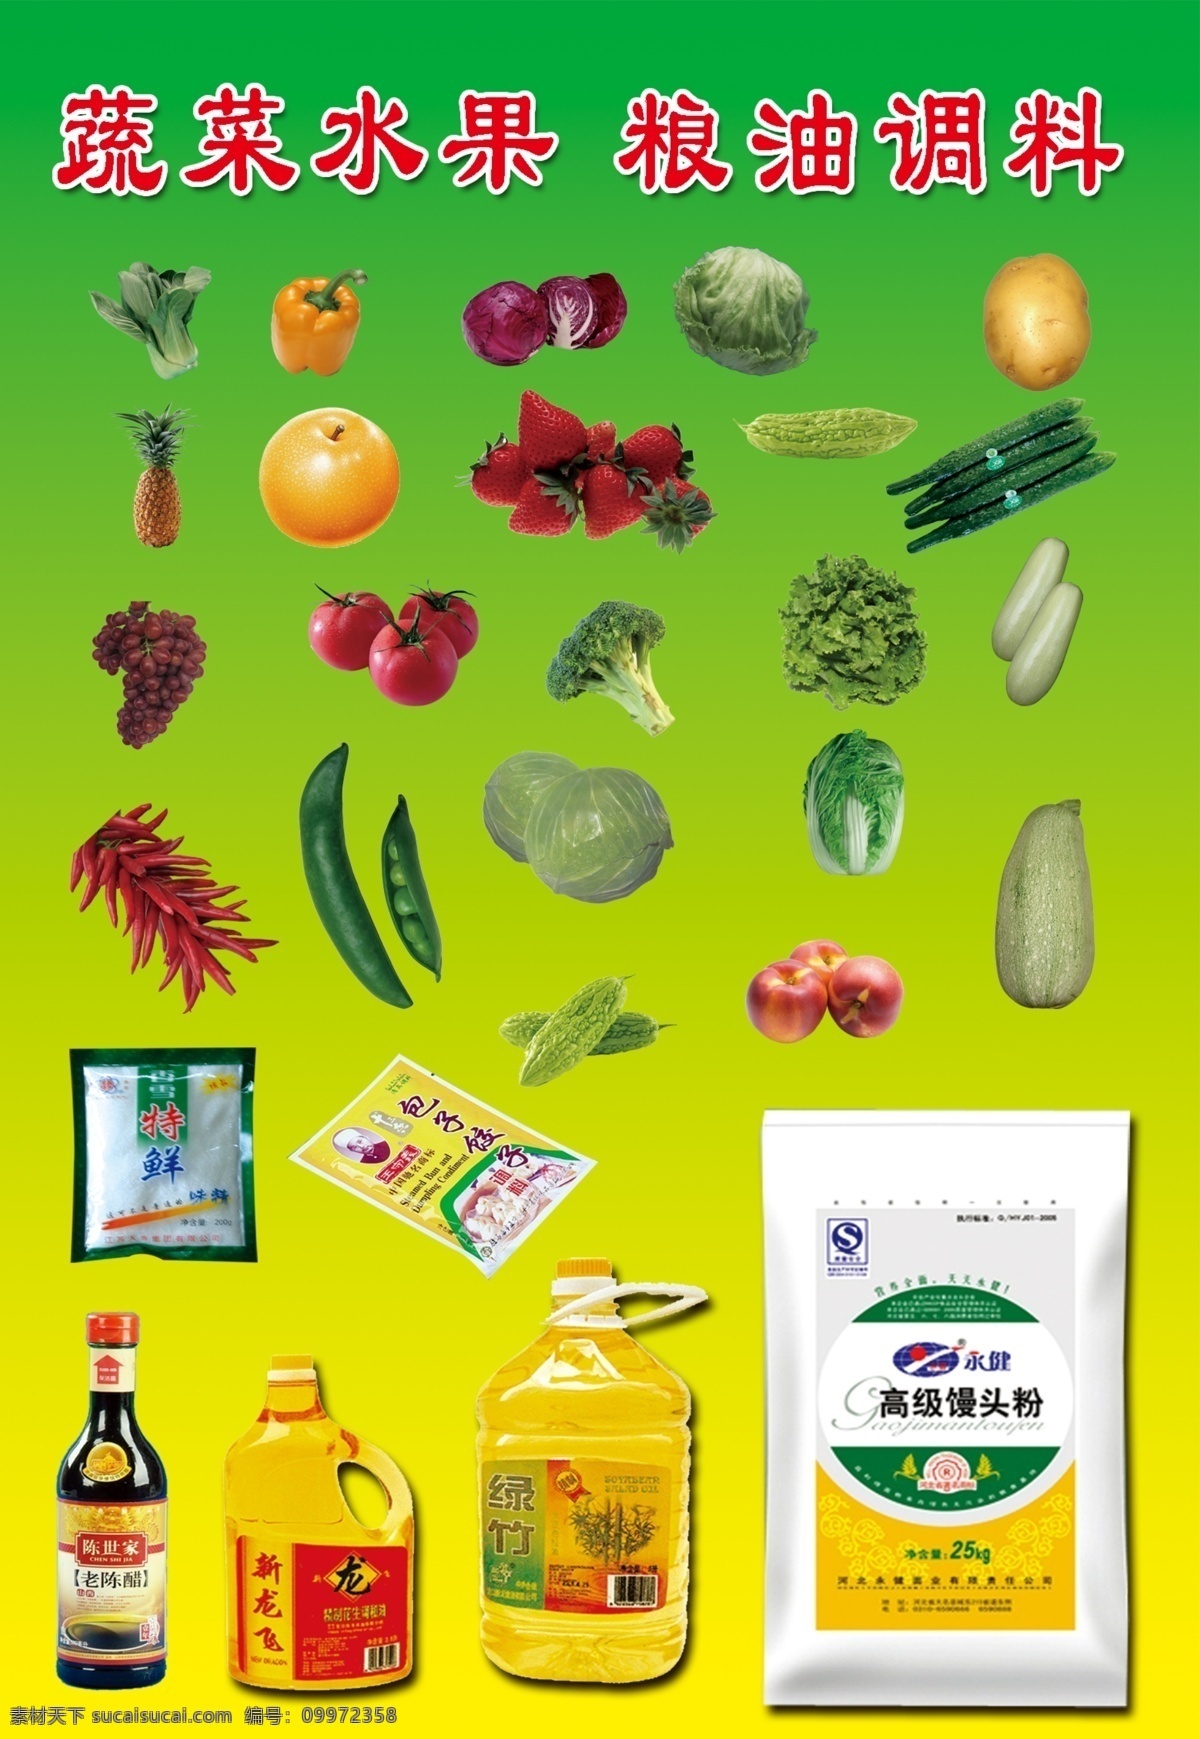 蔬菜水果 粮油 调料 蔬菜水果图片 粮油调料图片 苹果图片 食用油图片 馒头粉图片 绿色